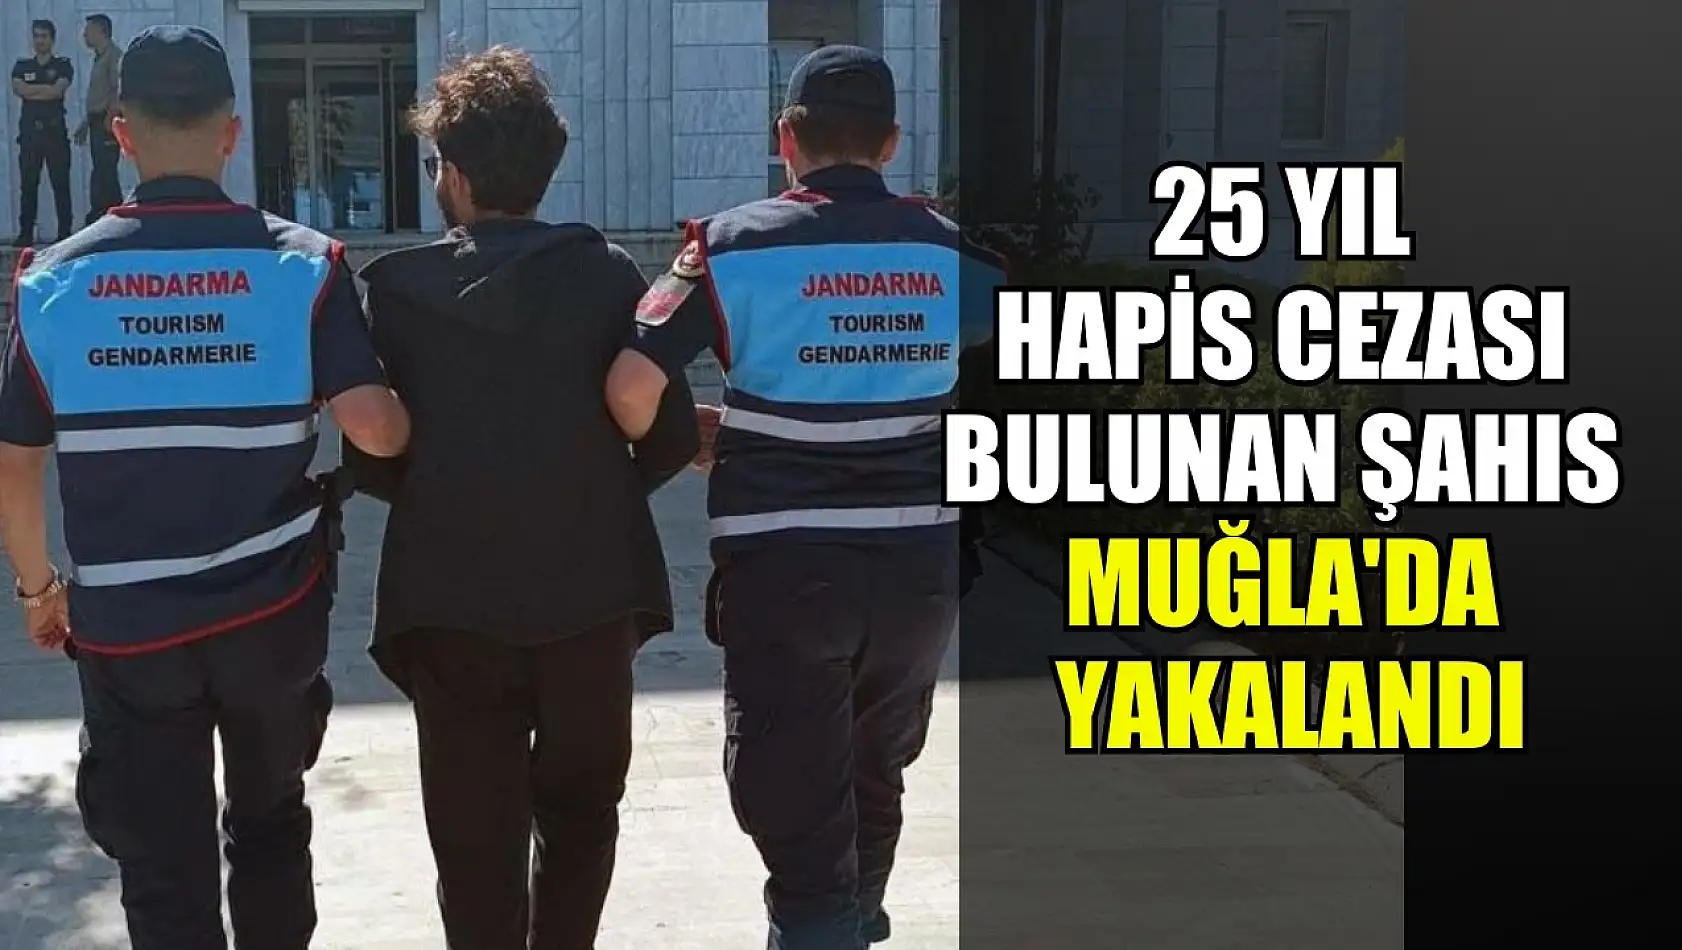 25 yıl hapis cezası bulunan şahıs Muğla'da yakalandı